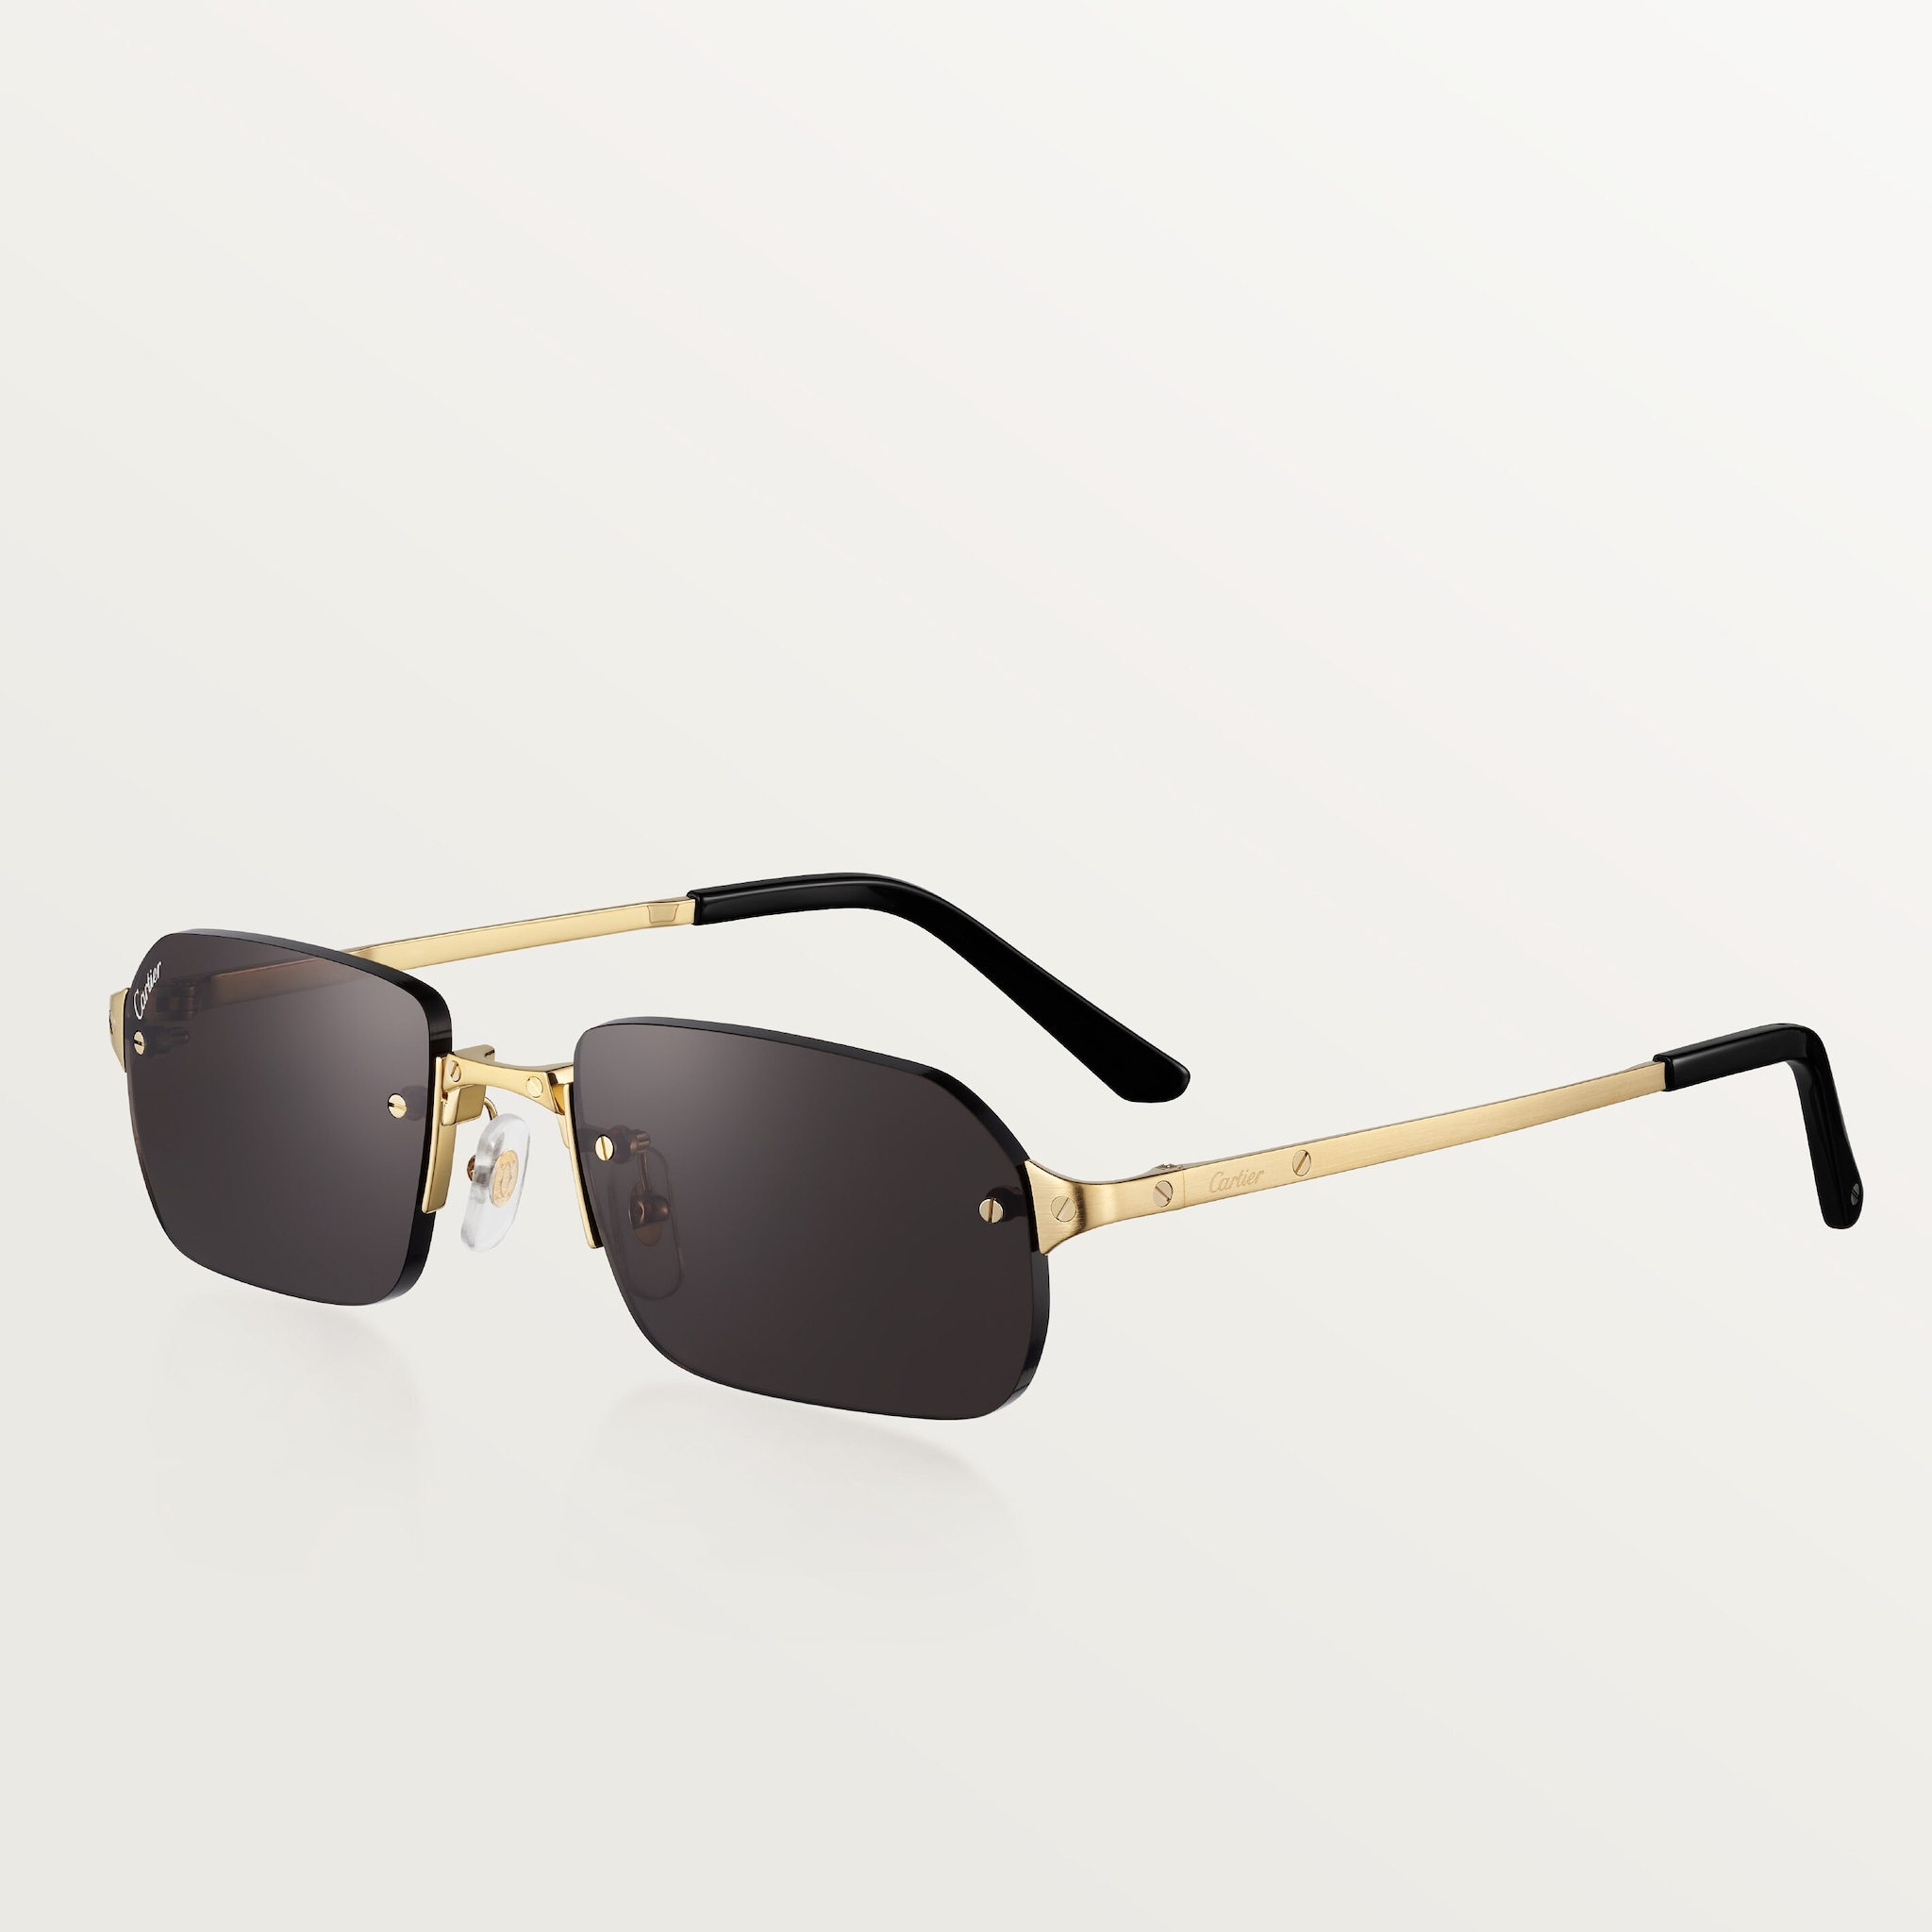 Gafas de sol Santos de CartierMetal acabado dorado liso y cepillado, lentes grises